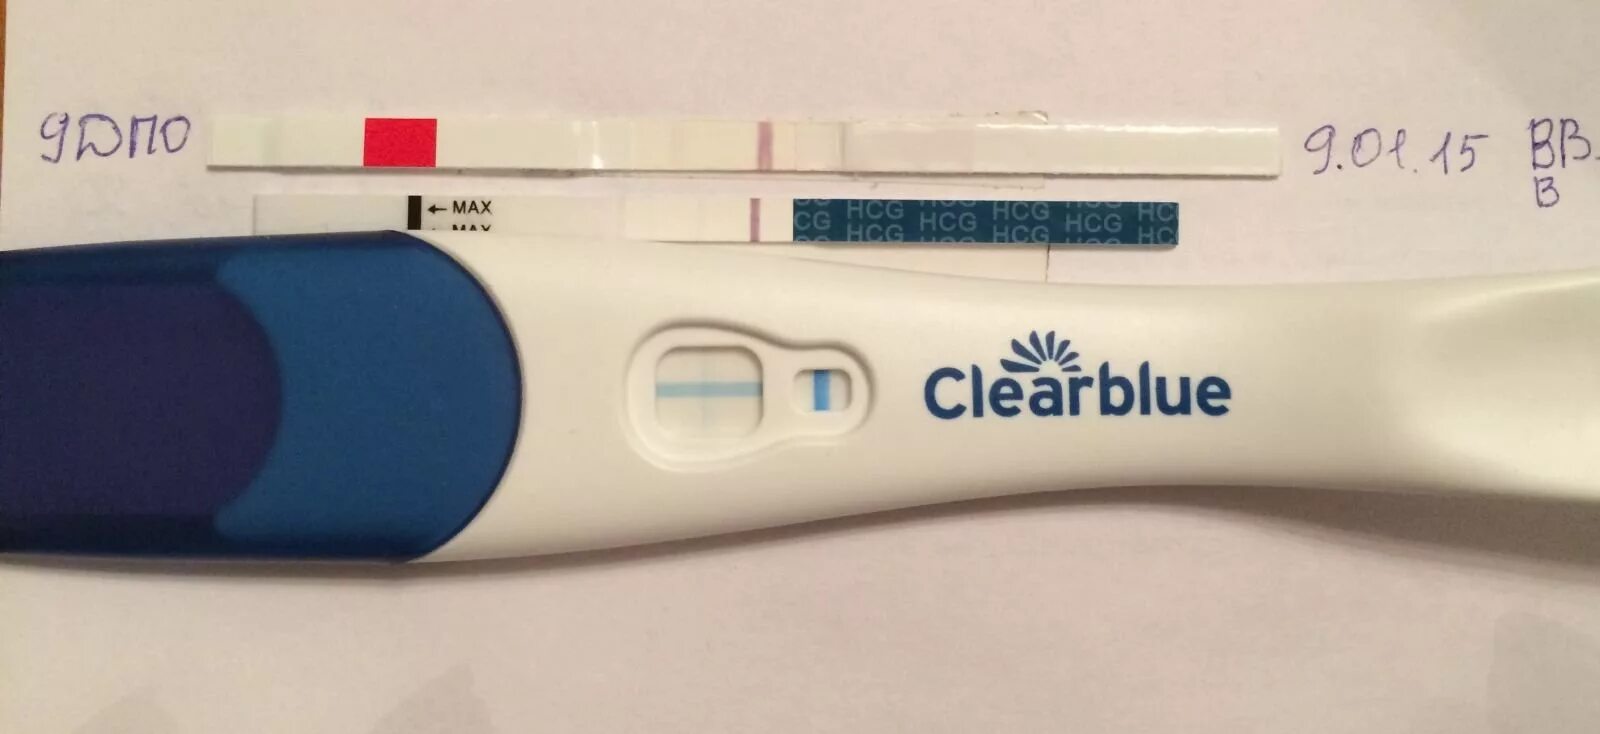 Тест clearblue до задержки. Клеа Блю плюс 10 ДПО. Тест Клеа Блю 9 ДПО. Clearblue тест на беременность 9 ДПО. Тест Clearblue 10 ДПО.